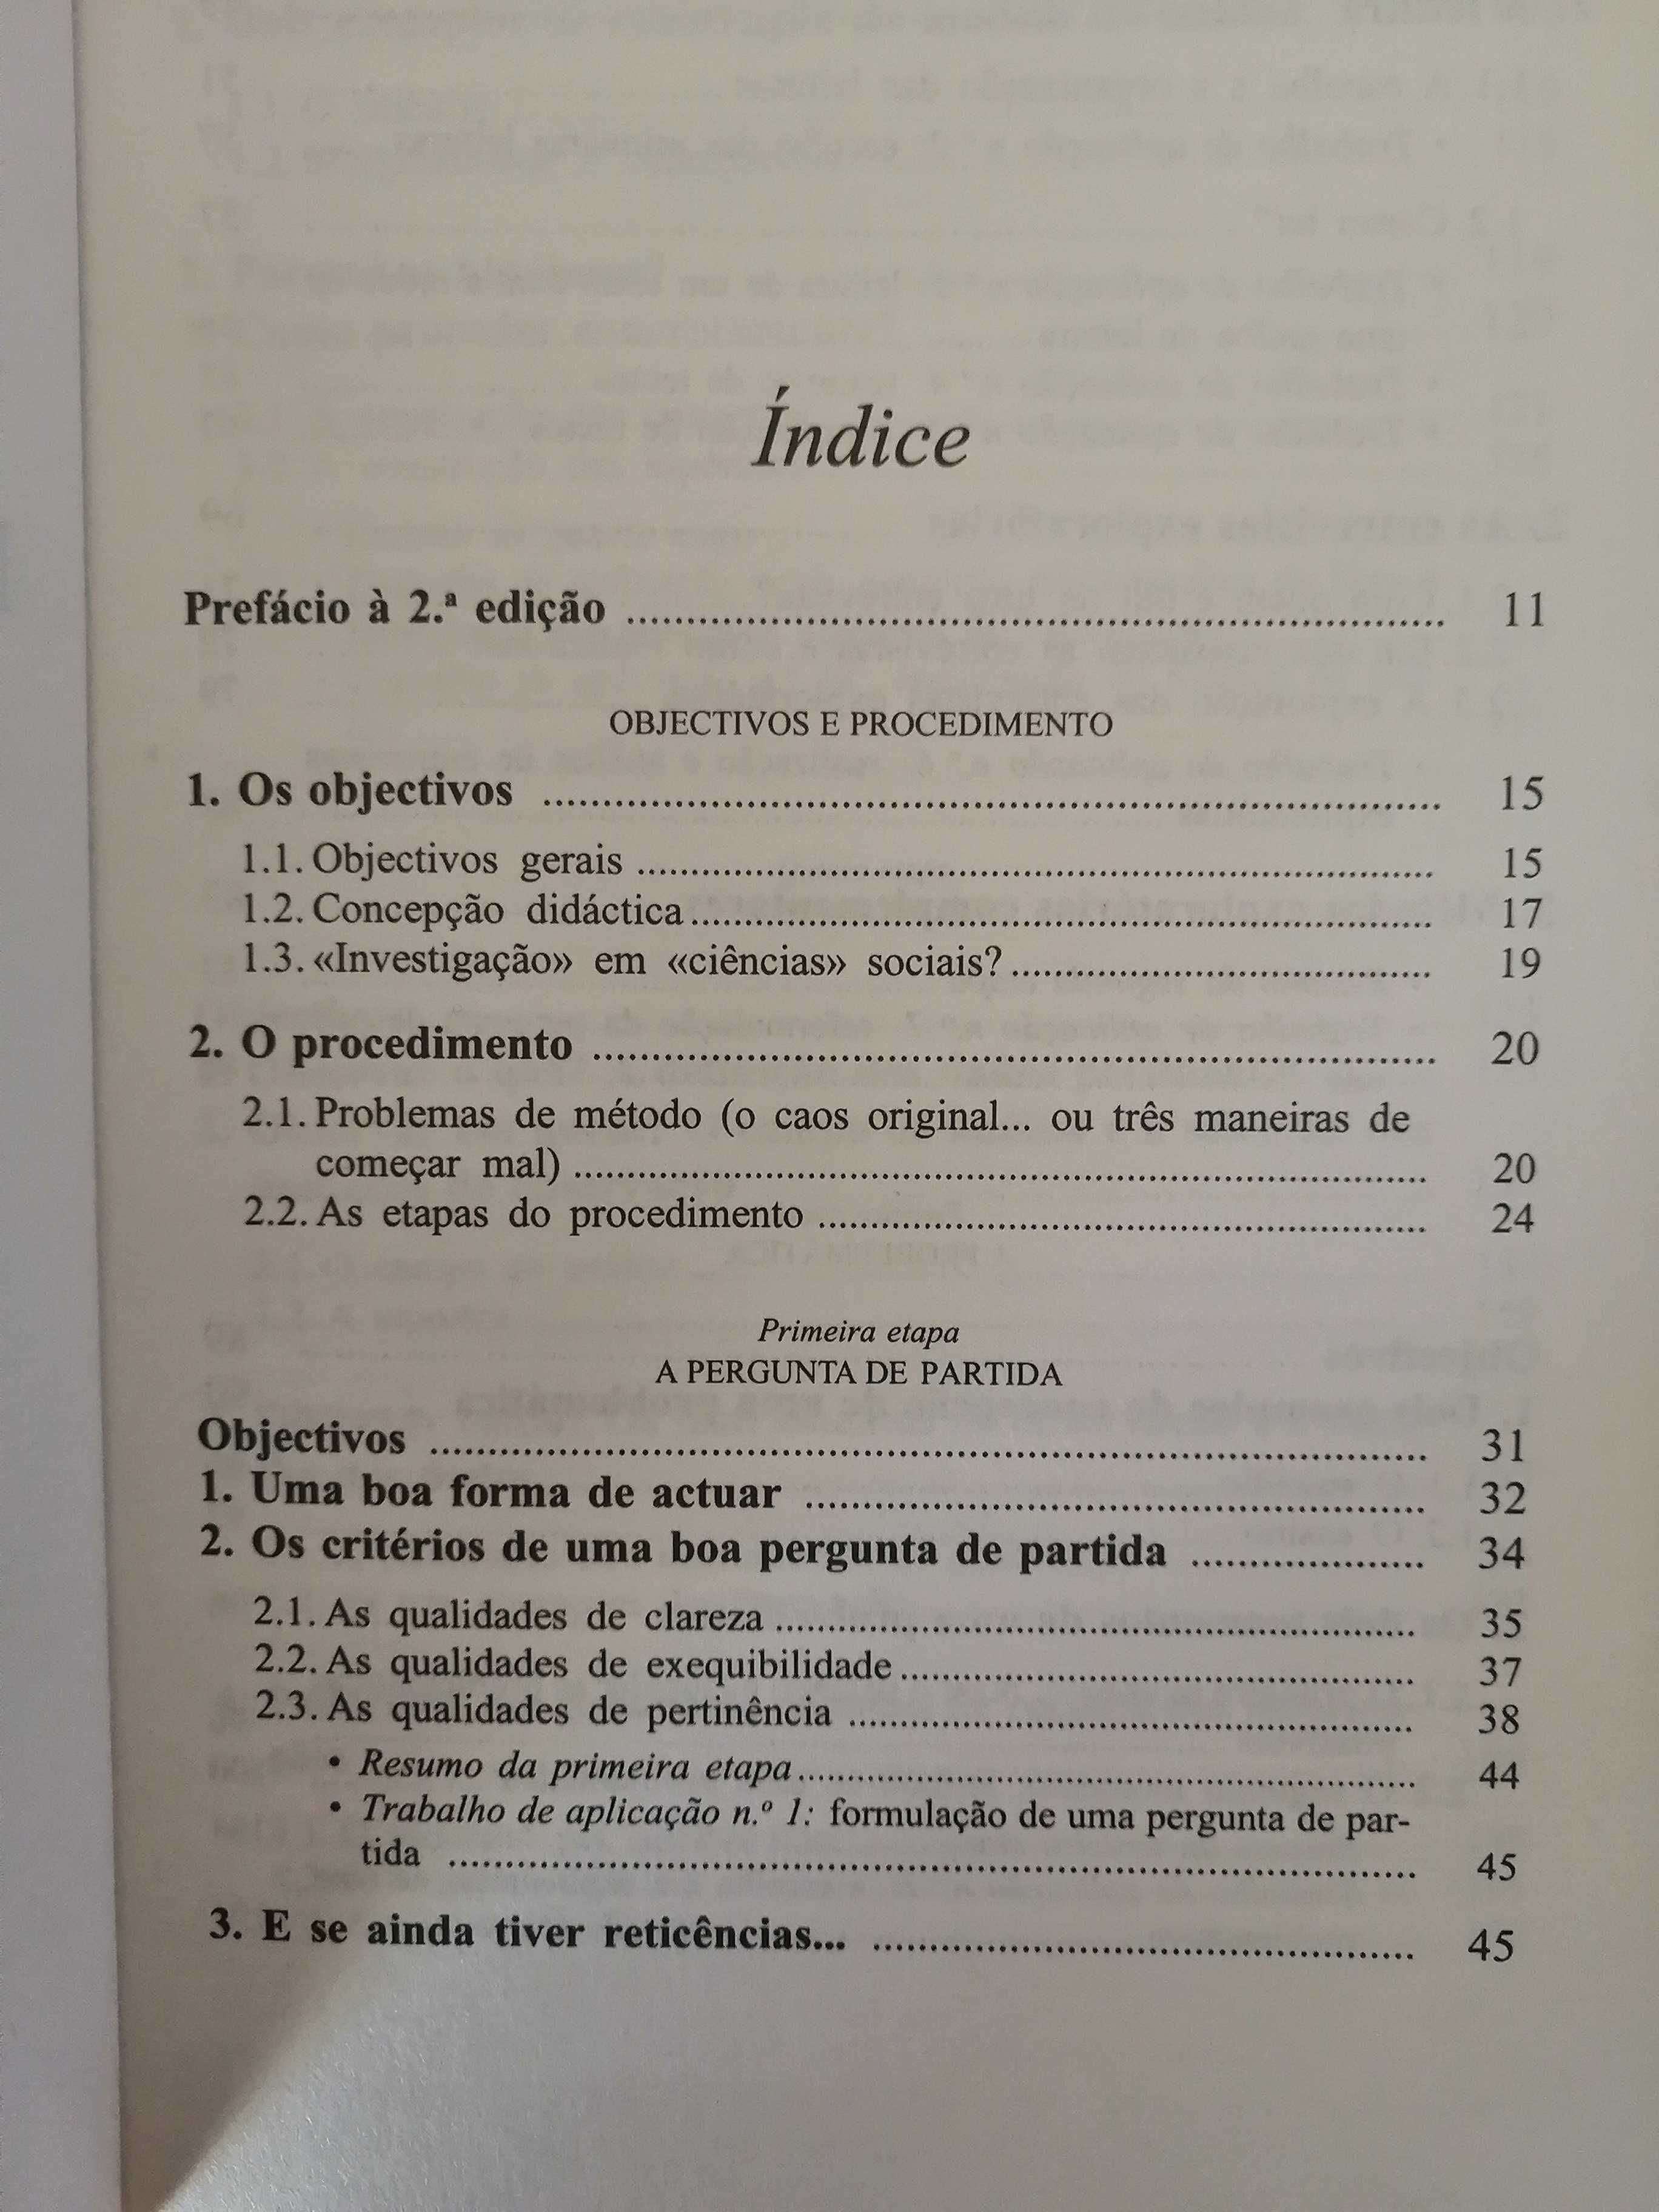 Livro "Manual de investigação em ciências sociais"